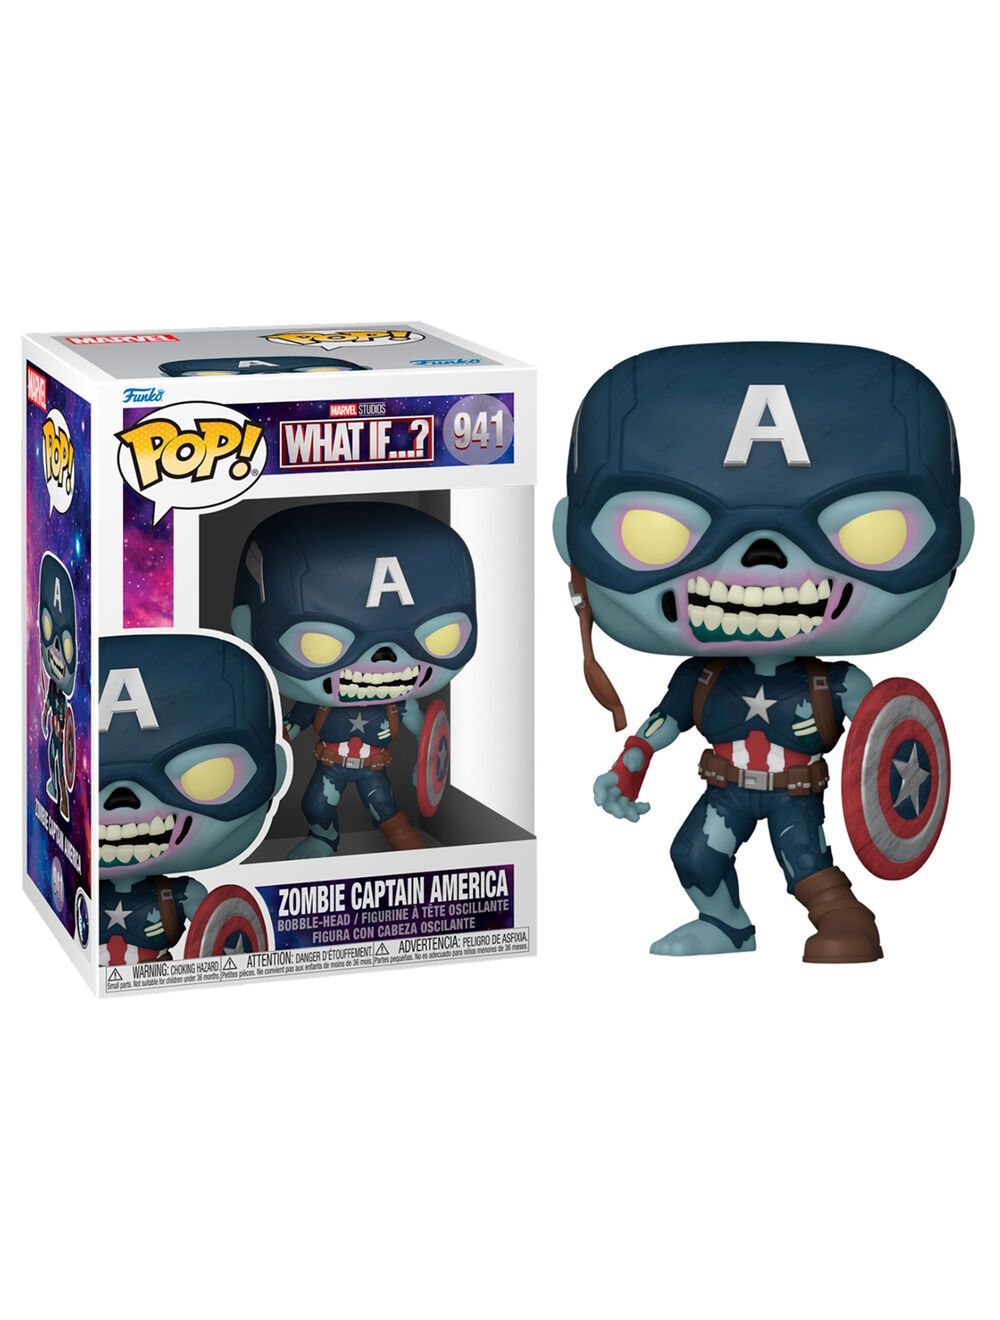 Funko POP! Marvel - What If - Zombie Captain America vinyl 10cm figura